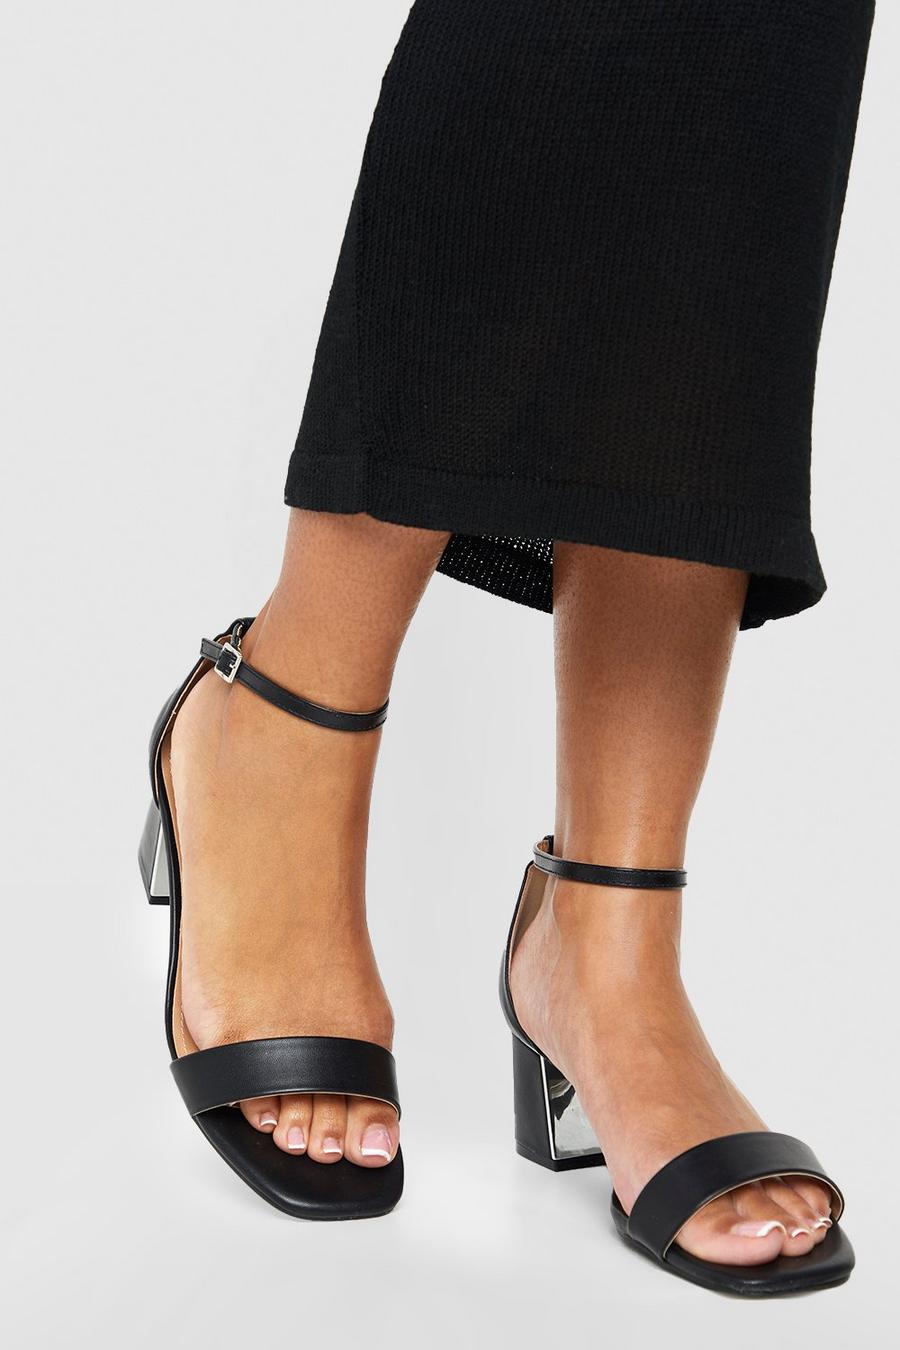 Sandalias de holgura ancha con tacón grueso bajo y detalle metálico, Black